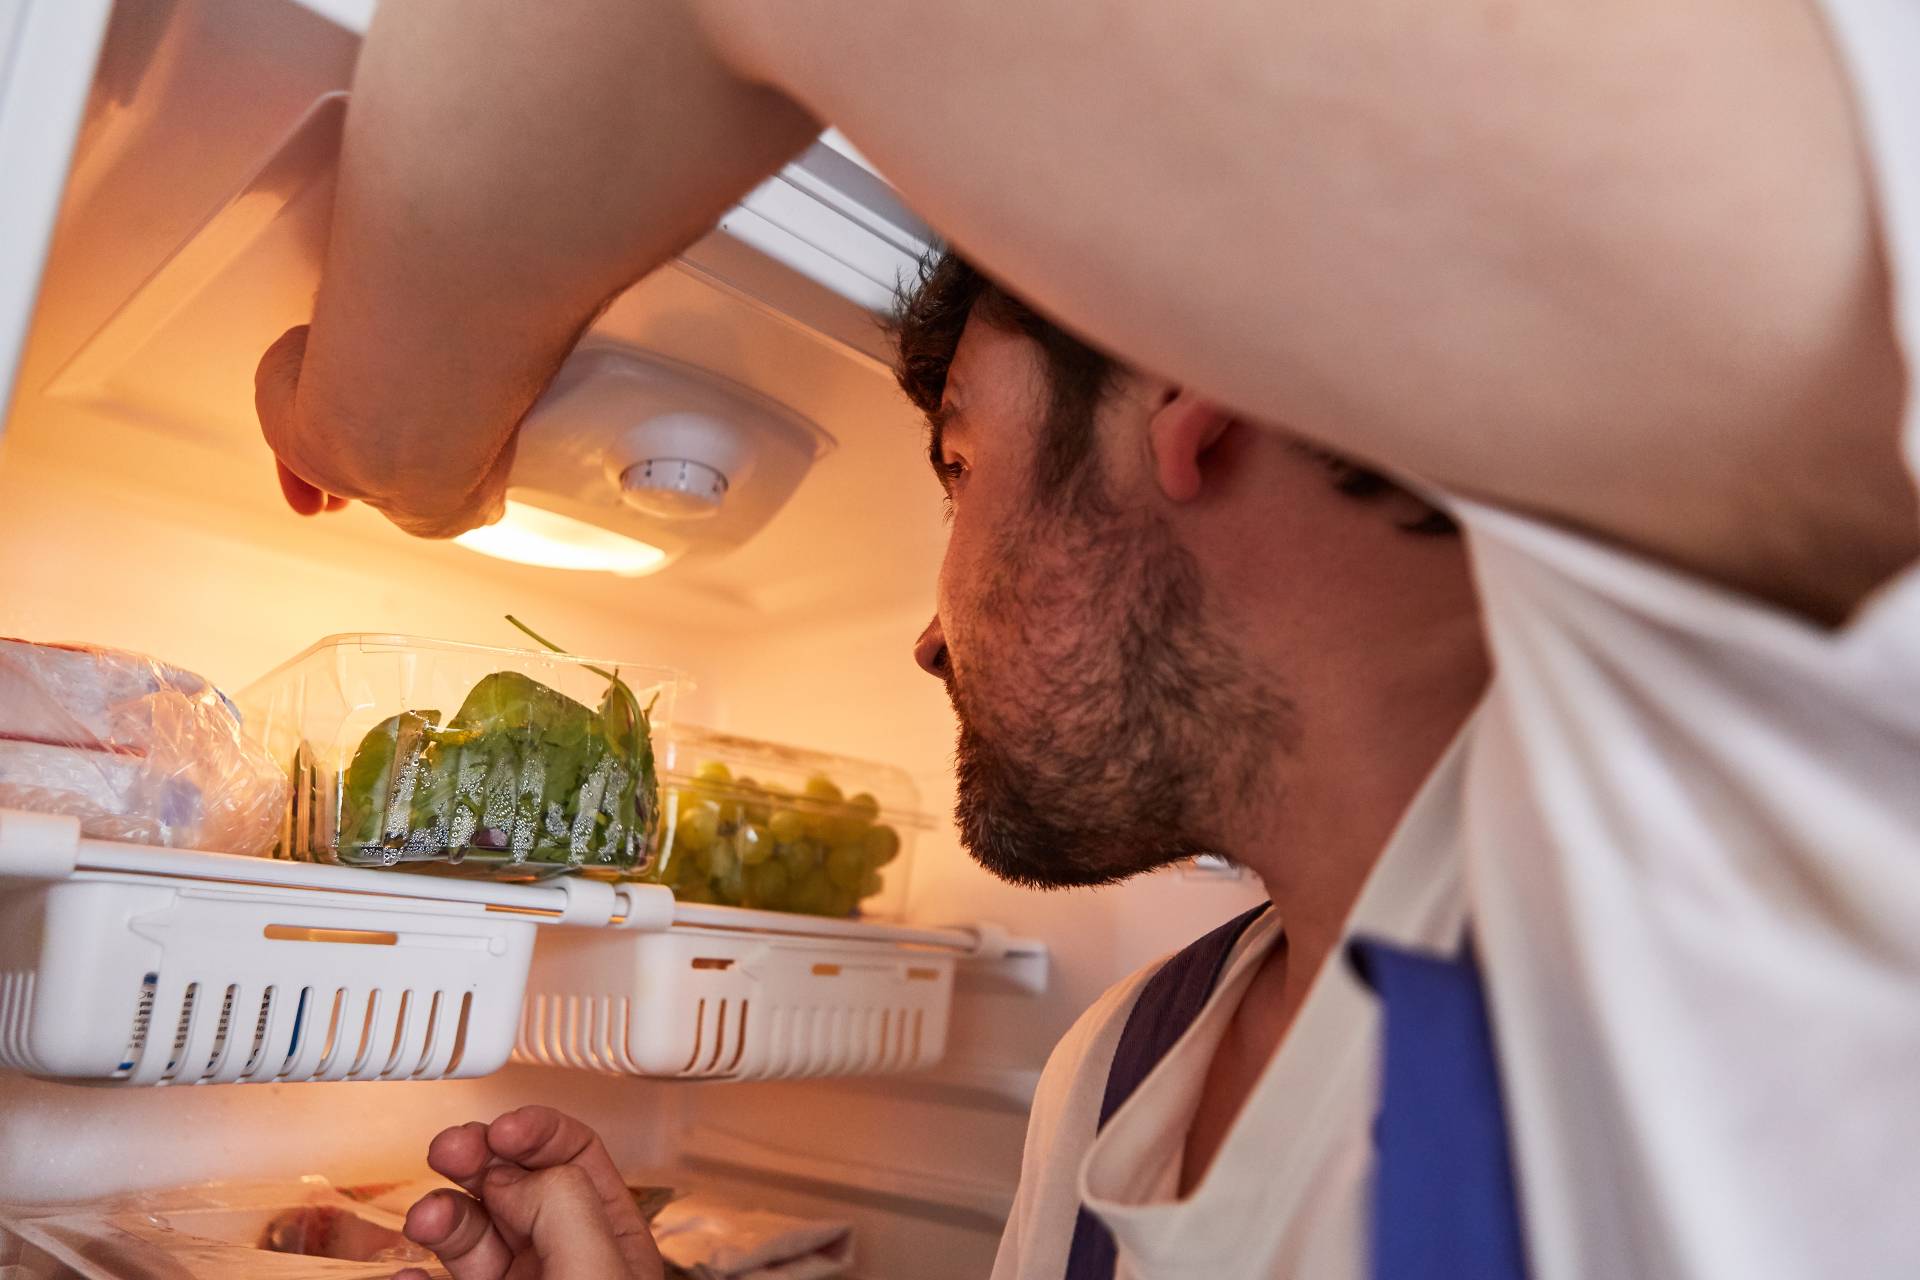 Comment changer l'ampoule d'un réfrigérateur? Guide pratique